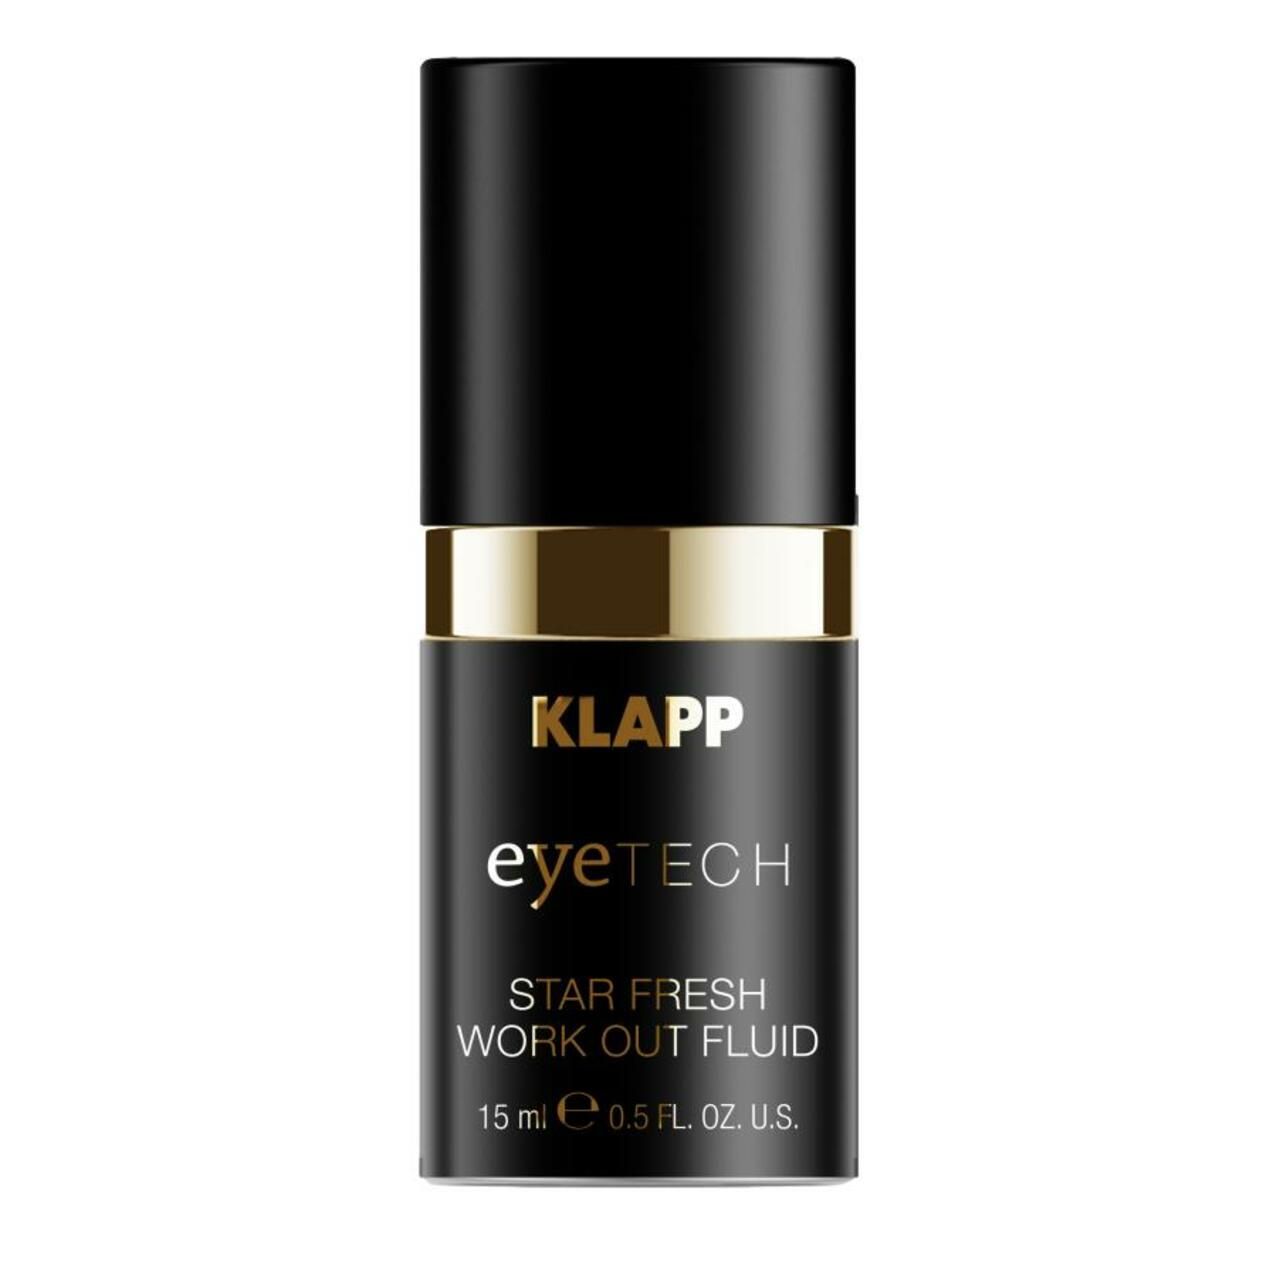 Klapp, Eyetech Star Fresh Work Out Fluid